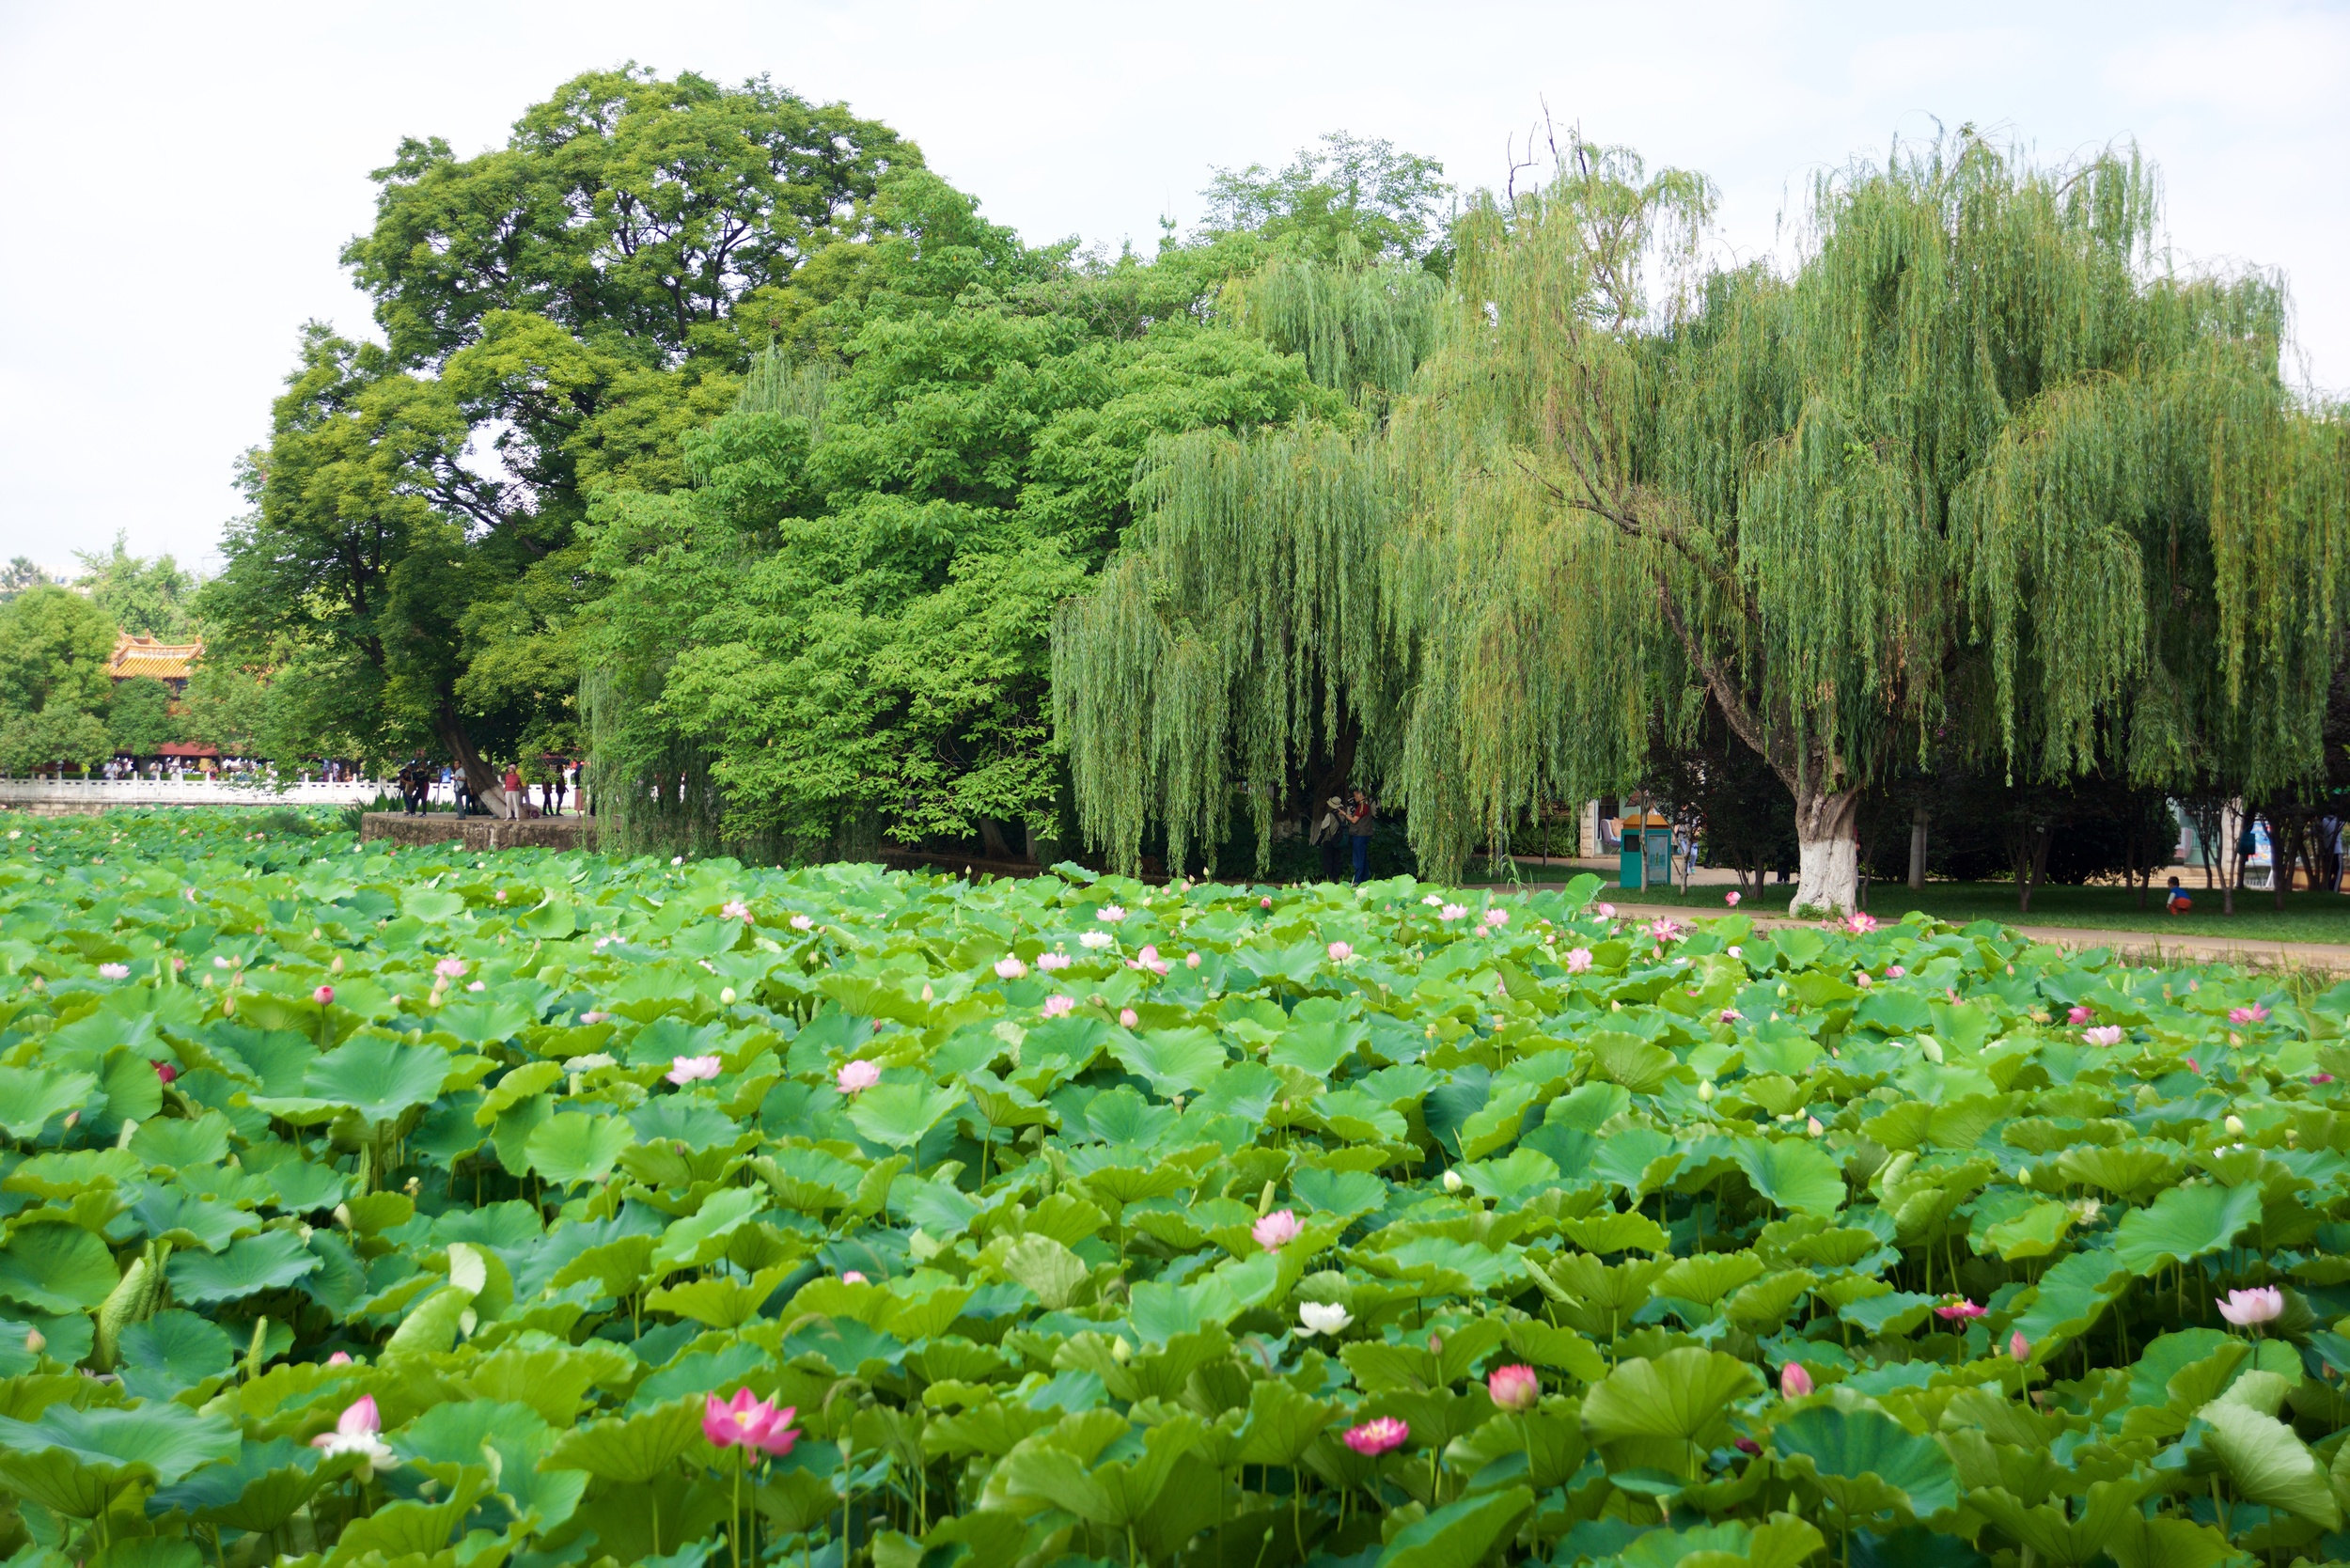  Lotus flowers in the park, Kunming 